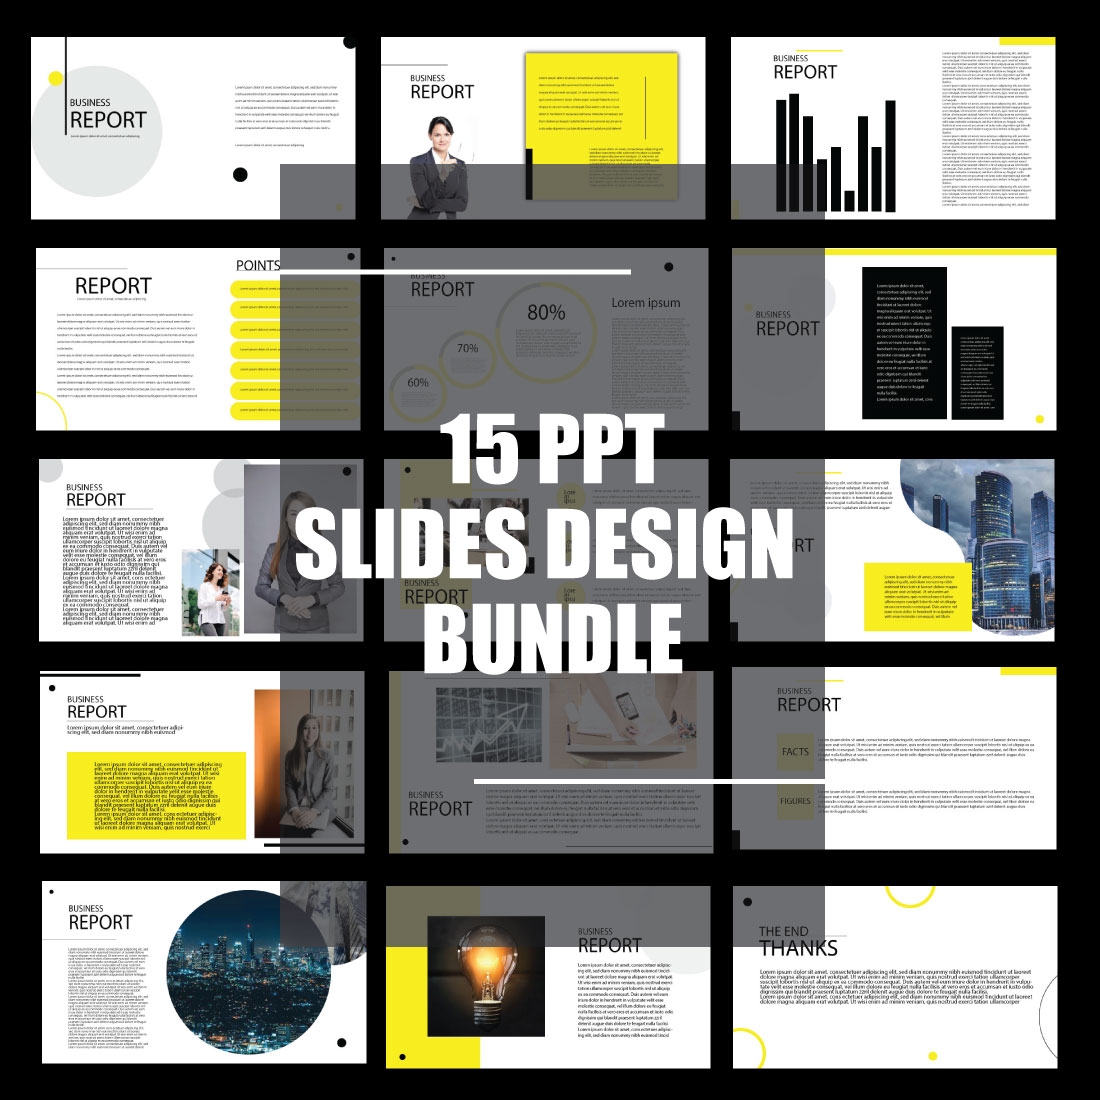 15 Business Slides Design Bundle cover image.